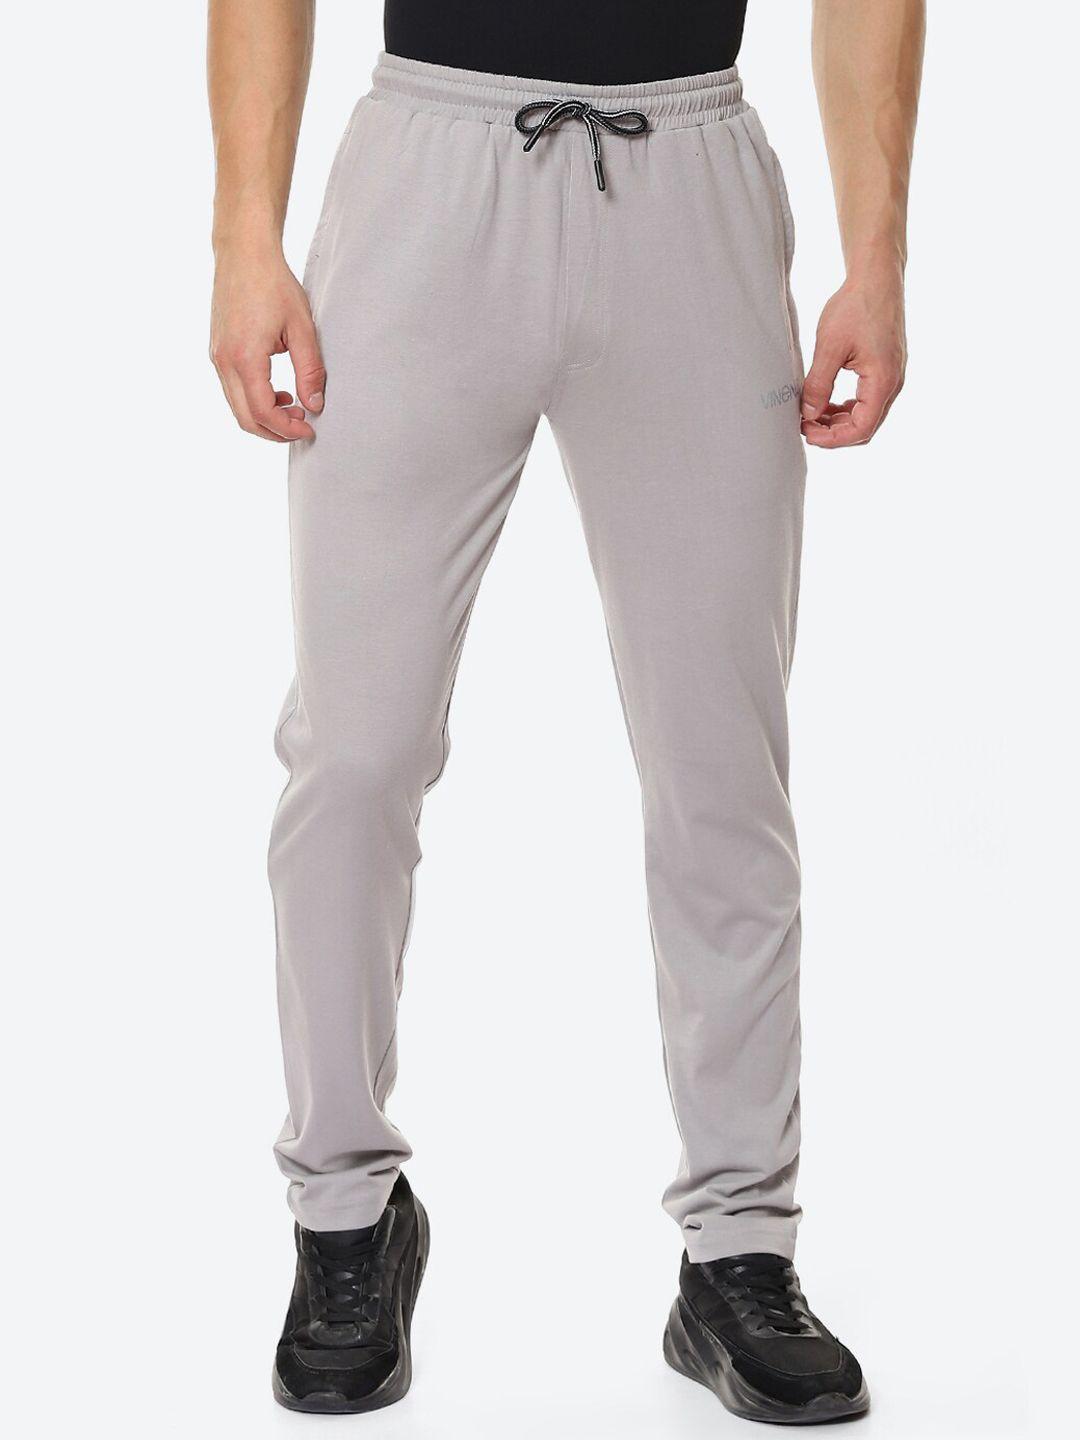 vinenzia men grey melange solid pure cotton track pants